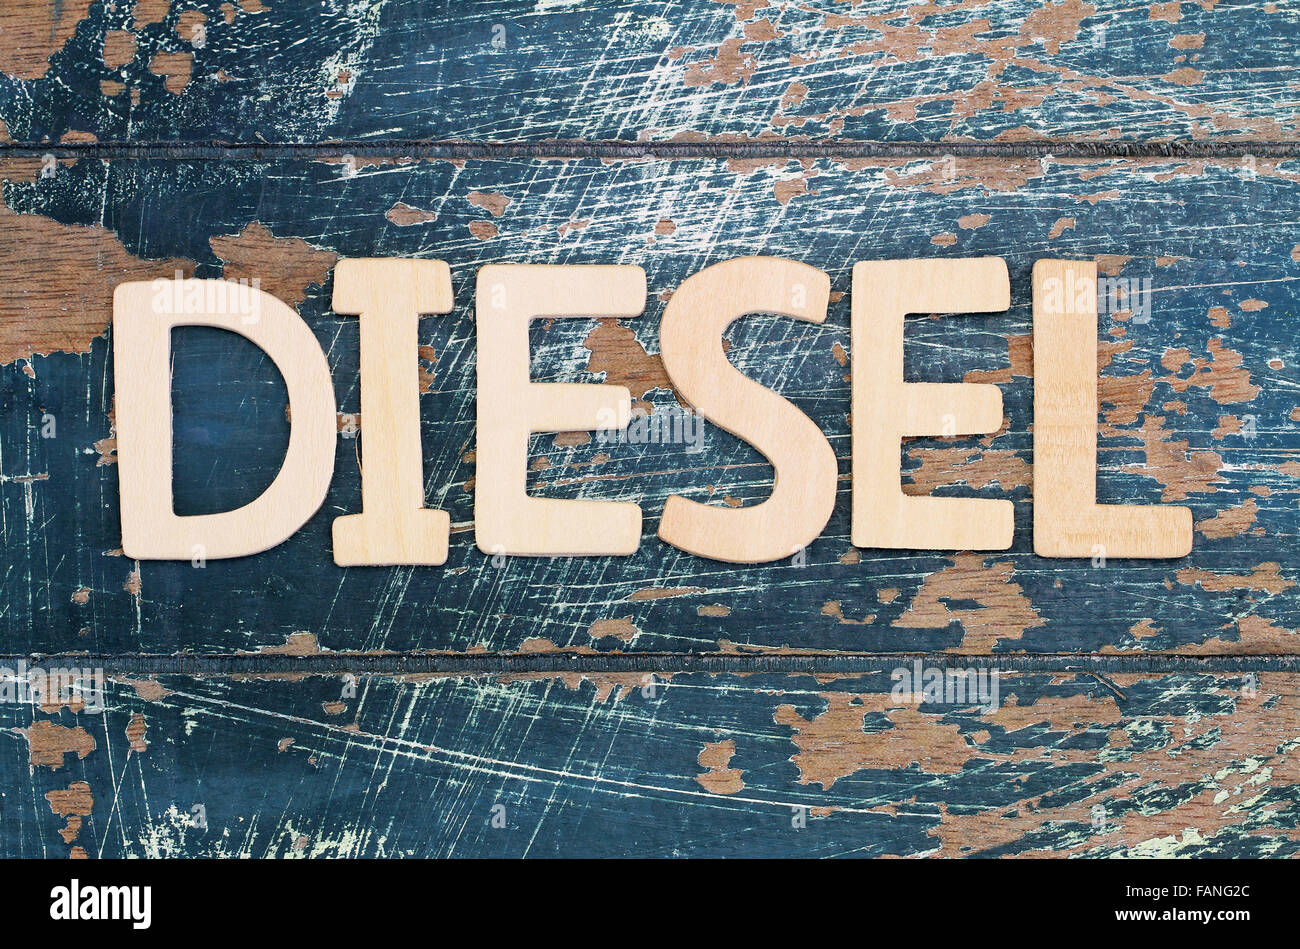 La parola scritta diesel con lettere in legno sulla superficie rustico Foto Stock